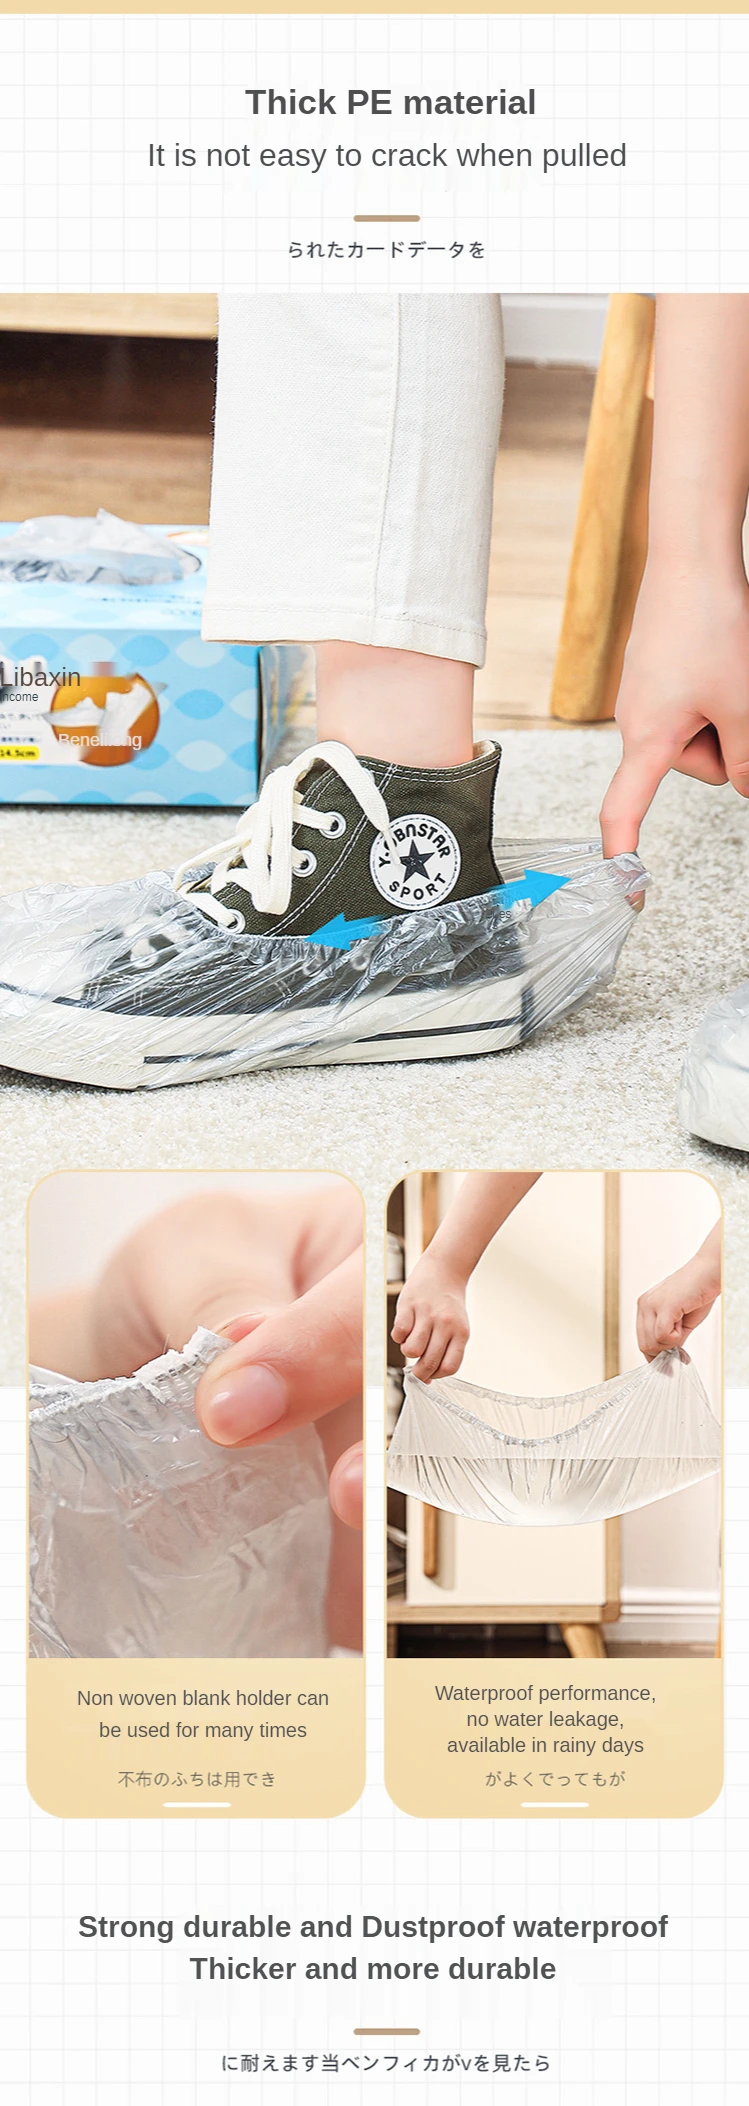 japão pces tipo de extração de plástico descartável sapato capa impermeável antiderrapante limpeza overshoes manter tapete piso limpo